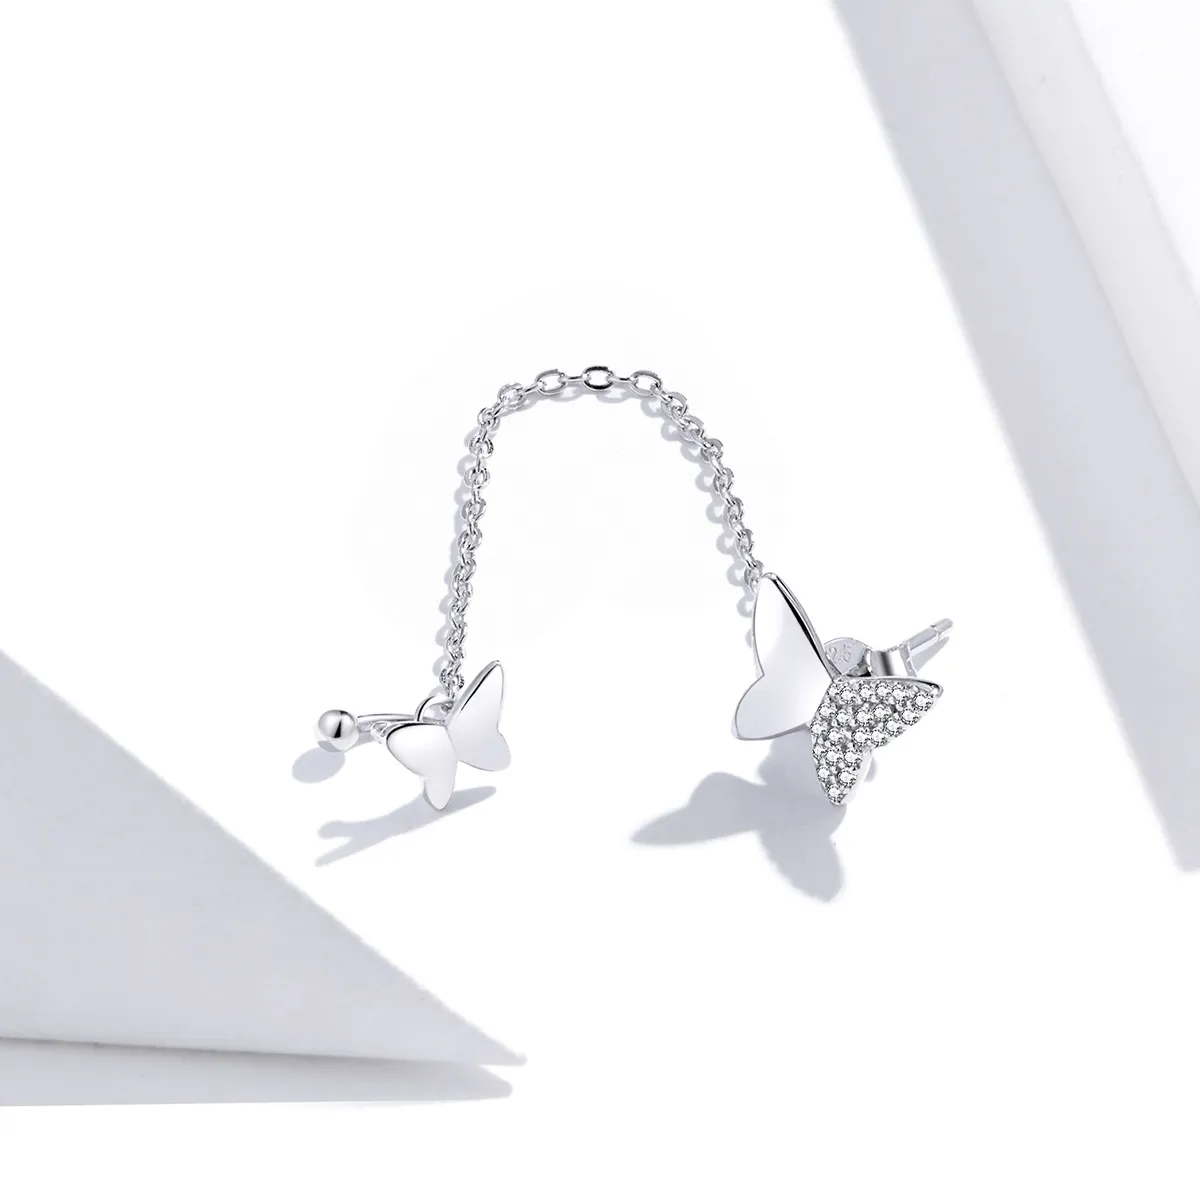 Pandora Style Silver Flying Butterflies Dangle Earrings - SCE913